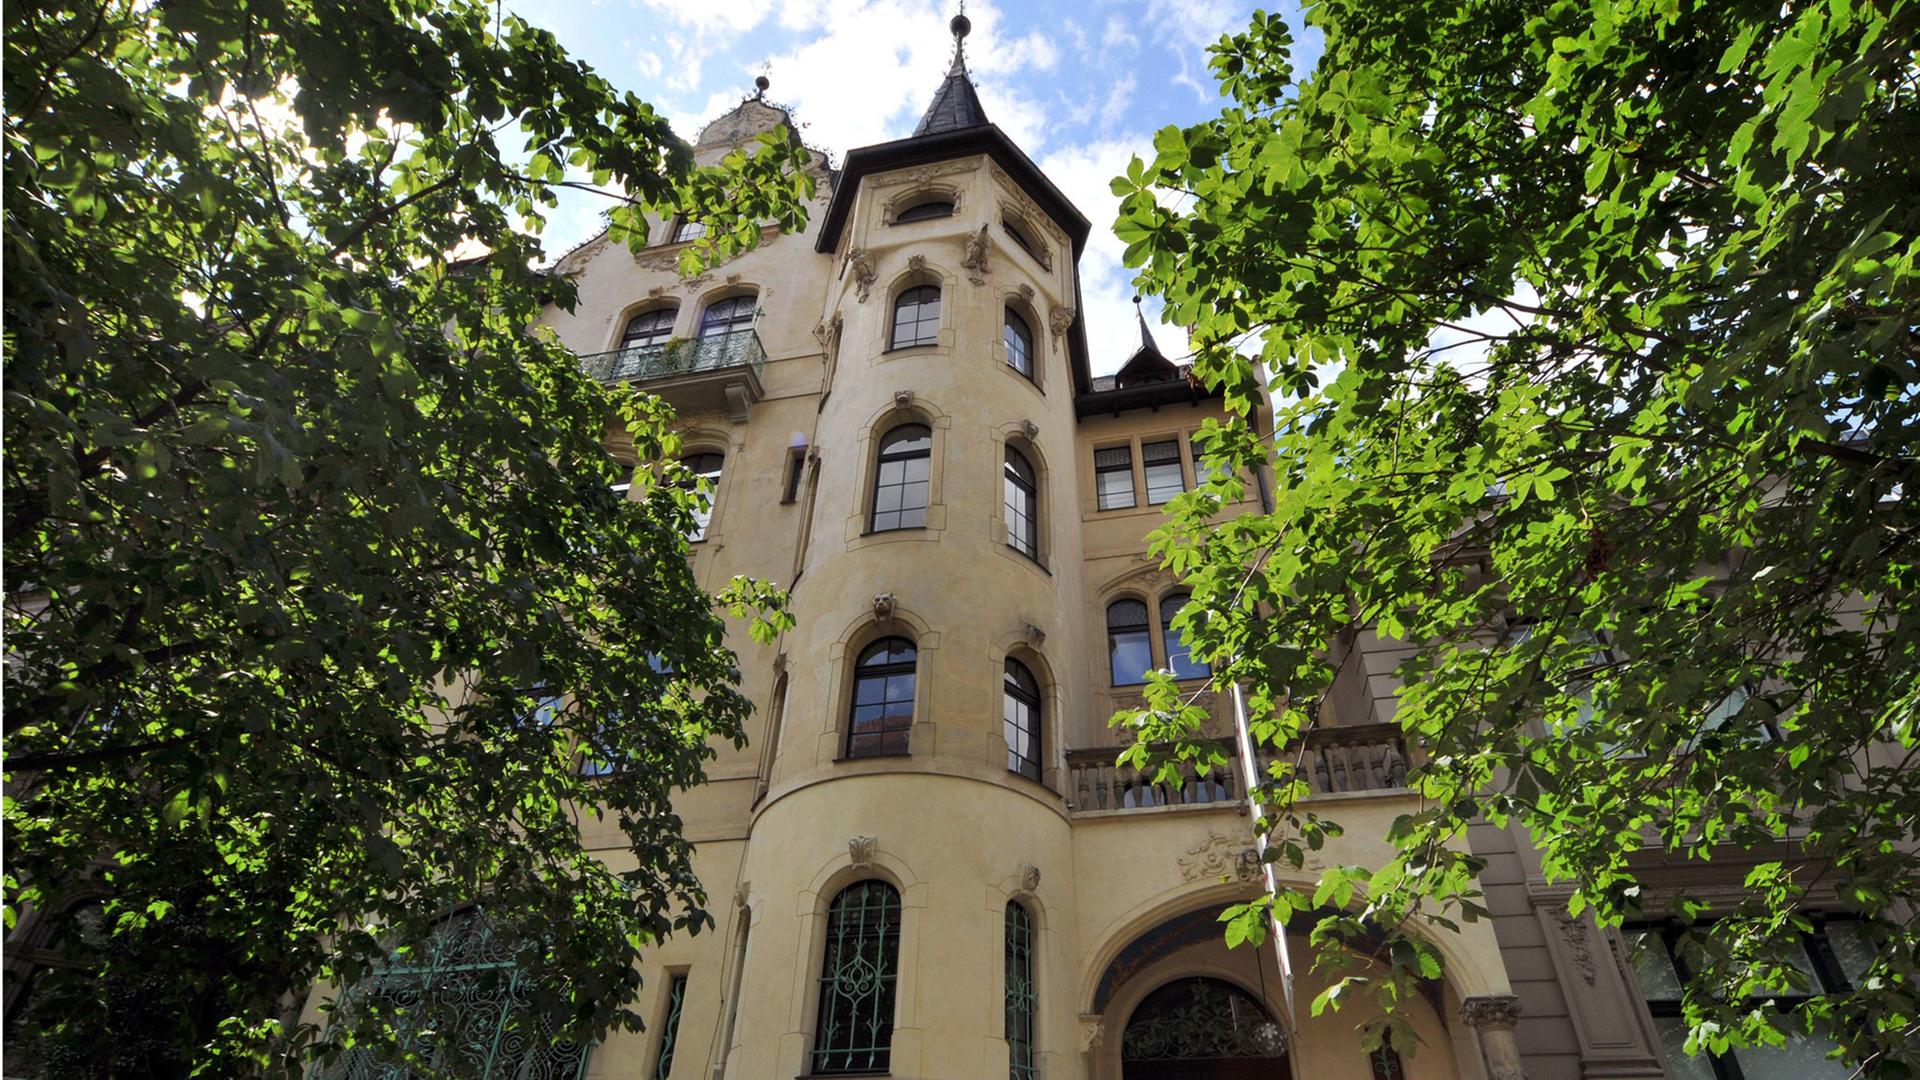 Ansicht der Villa Grisebach in der Berliner Fasanenstraße, wo das gleichnamige Auktionshaus untergebracht ist. Es ist ein mehrstöckiges Gebäude mit einem Turm auf der Spitze.